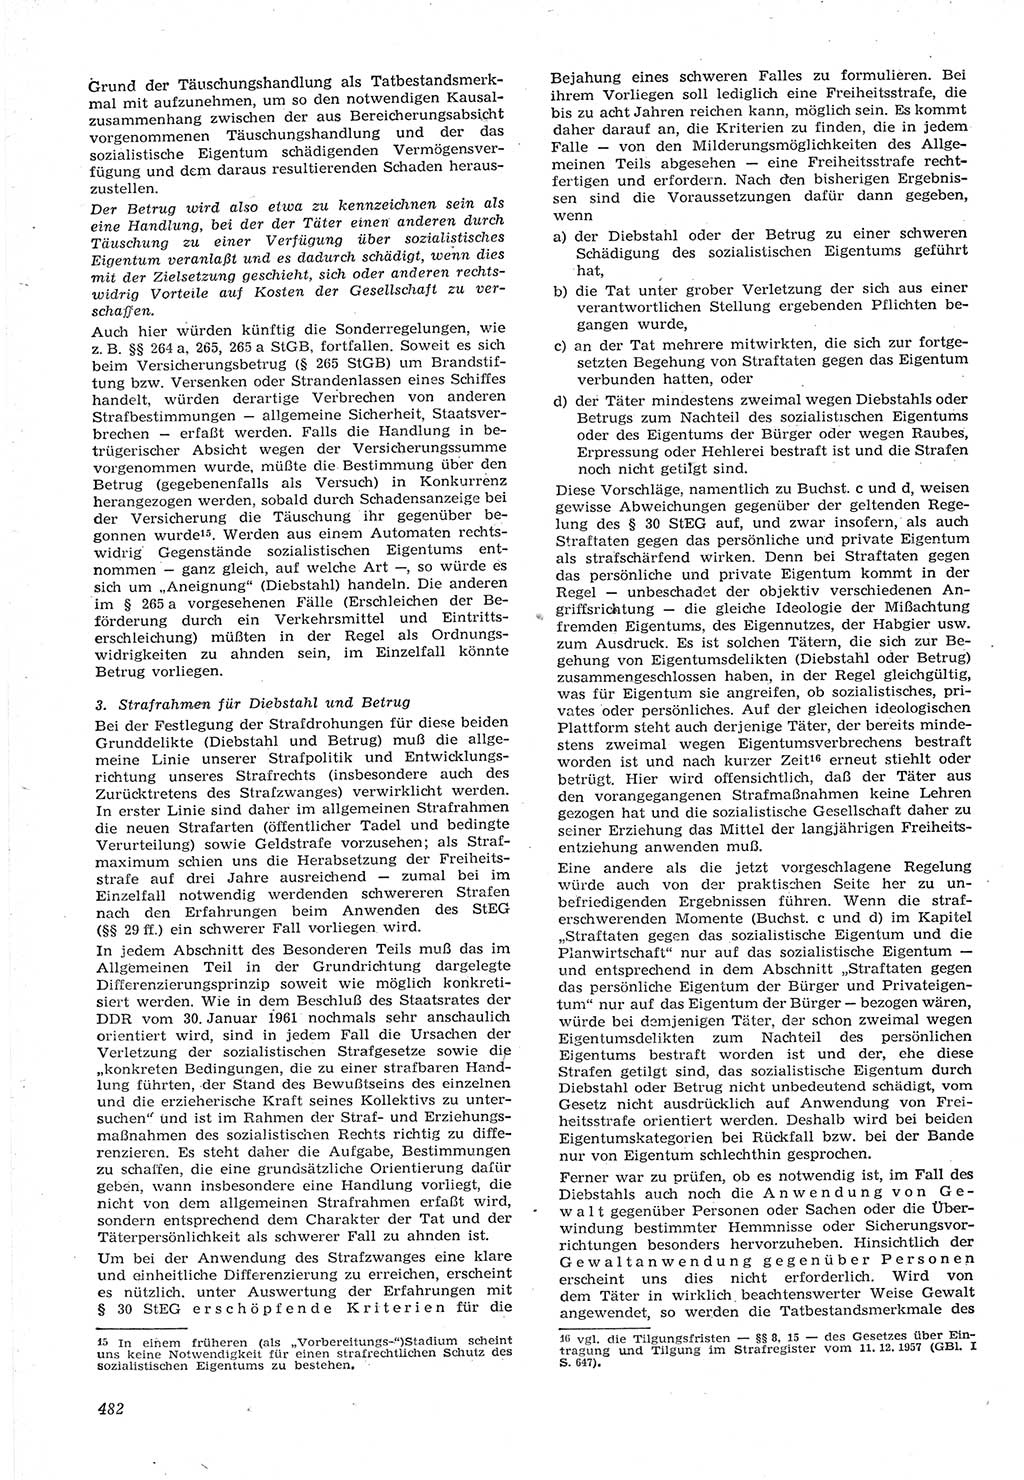 Neue Justiz (NJ), Zeitschrift für Recht und Rechtswissenschaft [Deutsche Demokratische Republik (DDR)], 15. Jahrgang 1961, Seite 482 (NJ DDR 1961, S. 482)